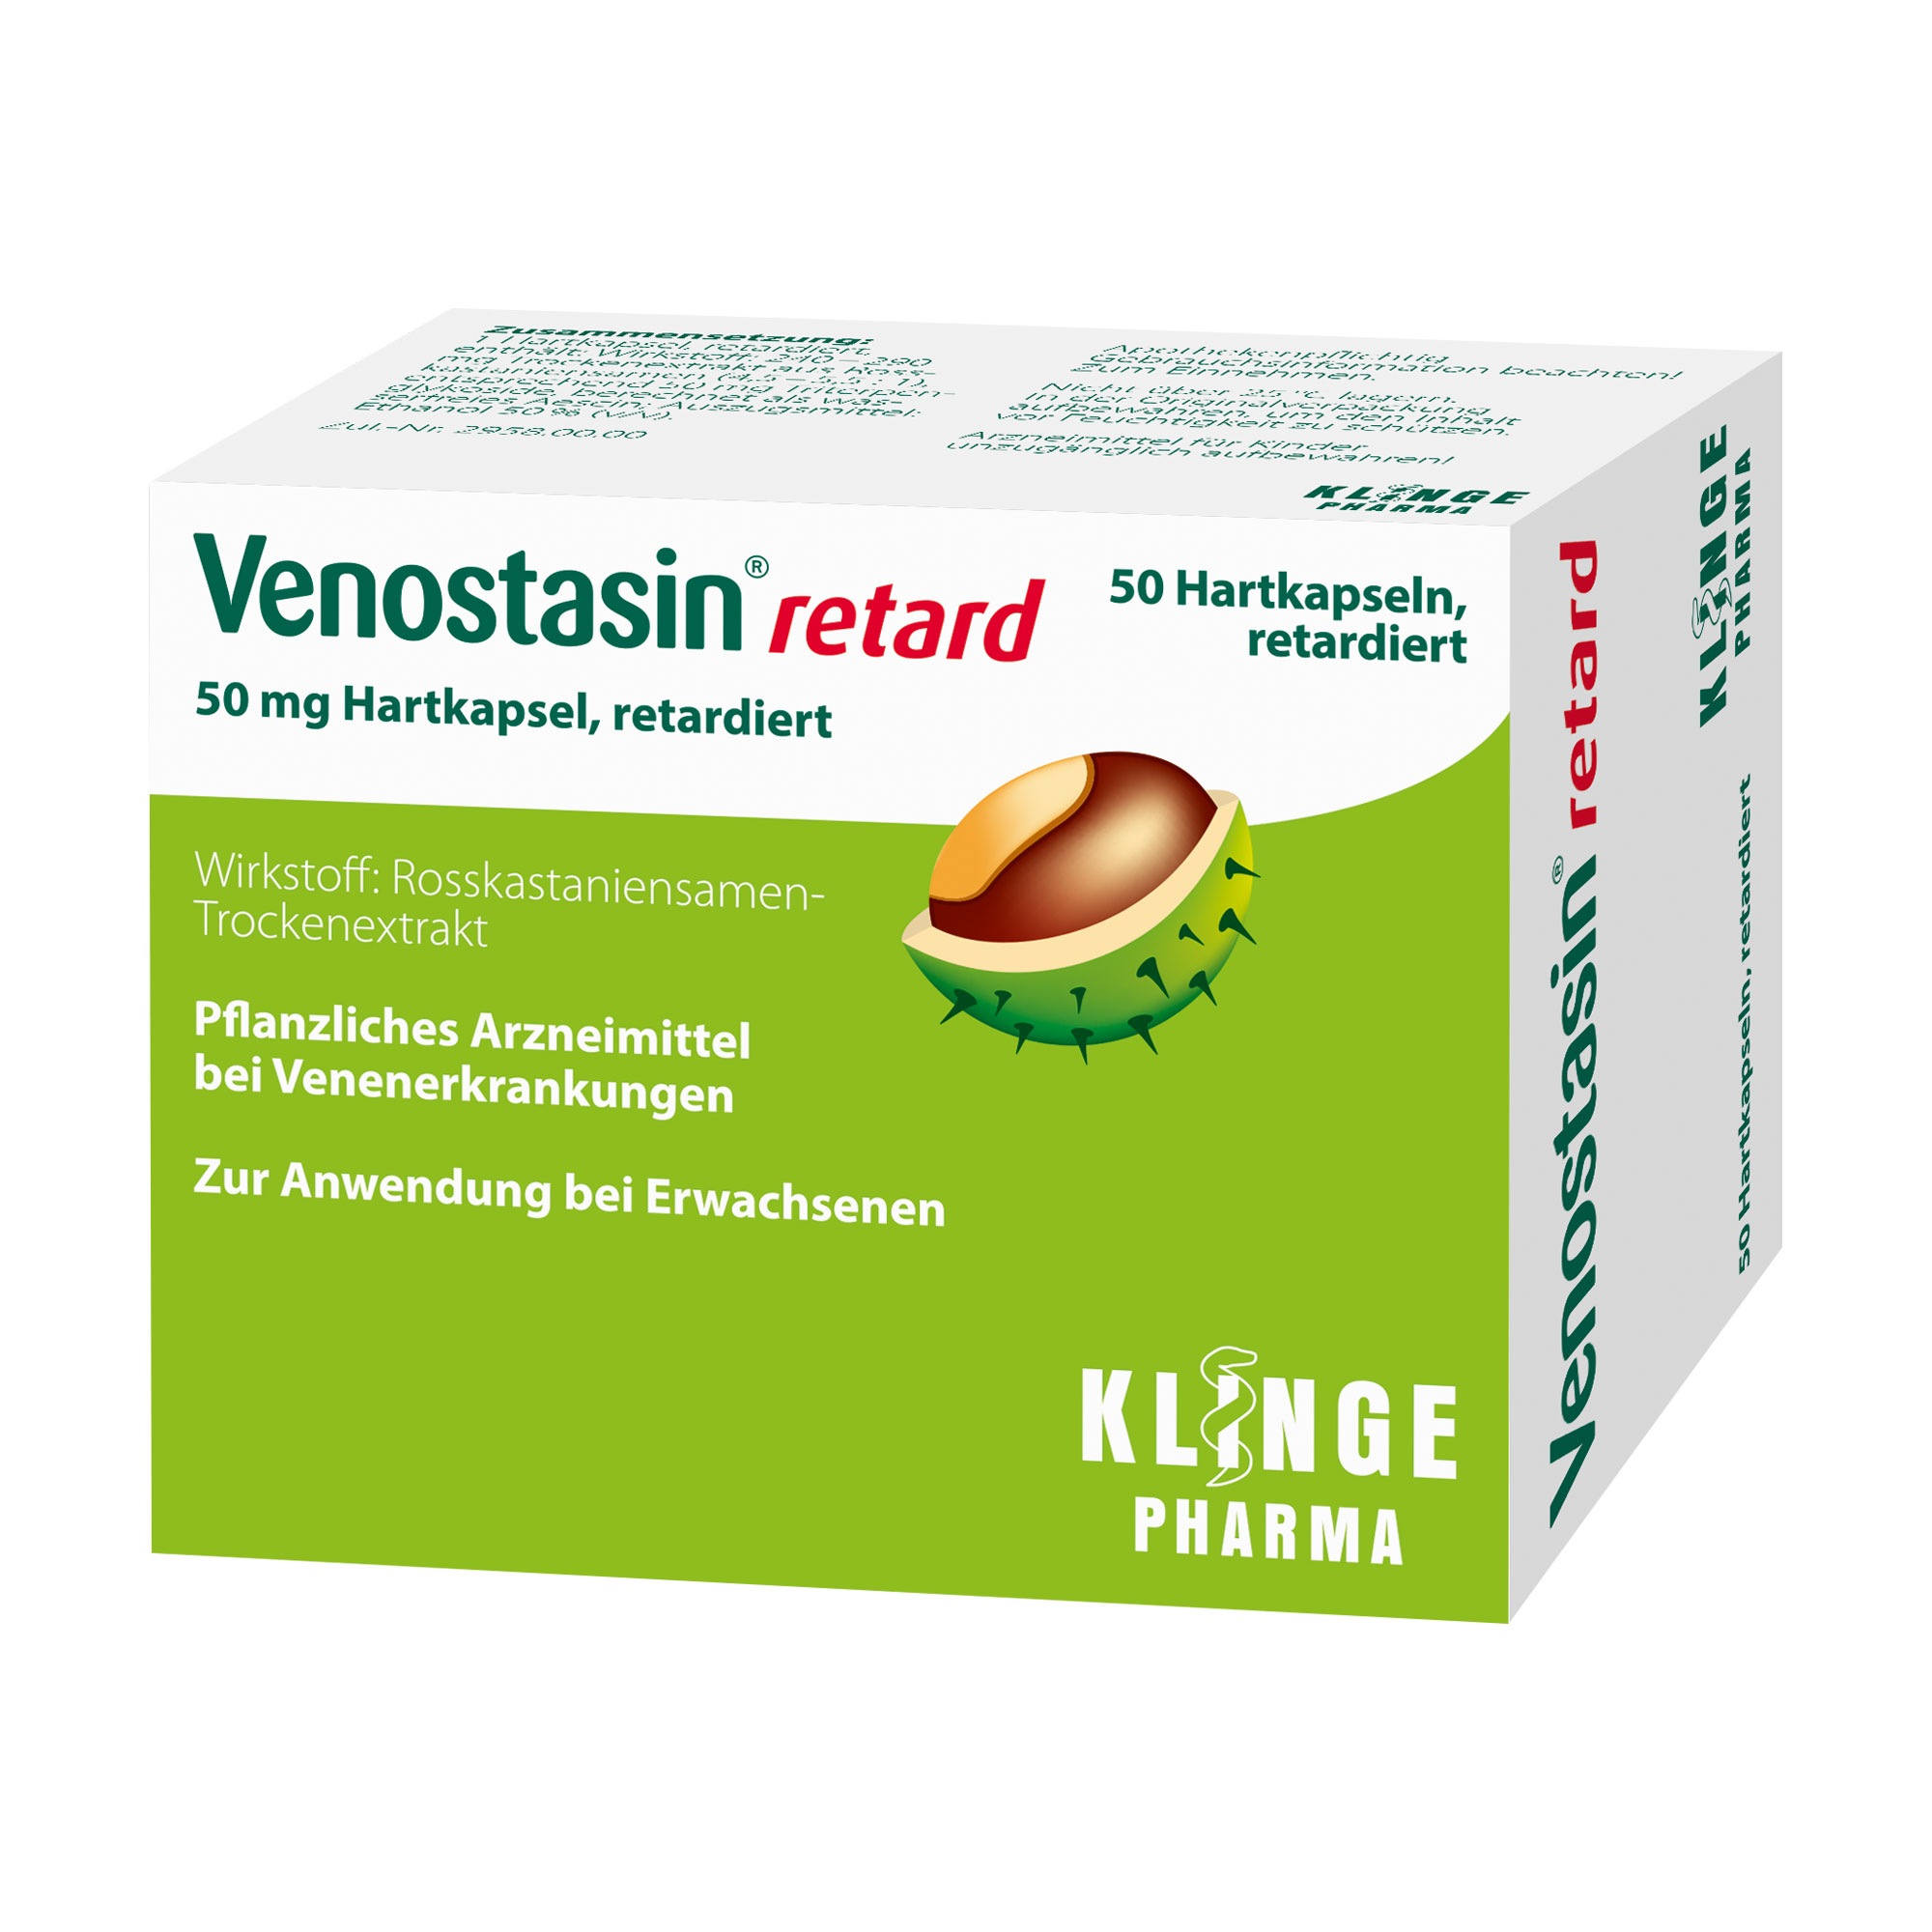 Pflanzliches Arzneimittel bei Venenerkrankungen.